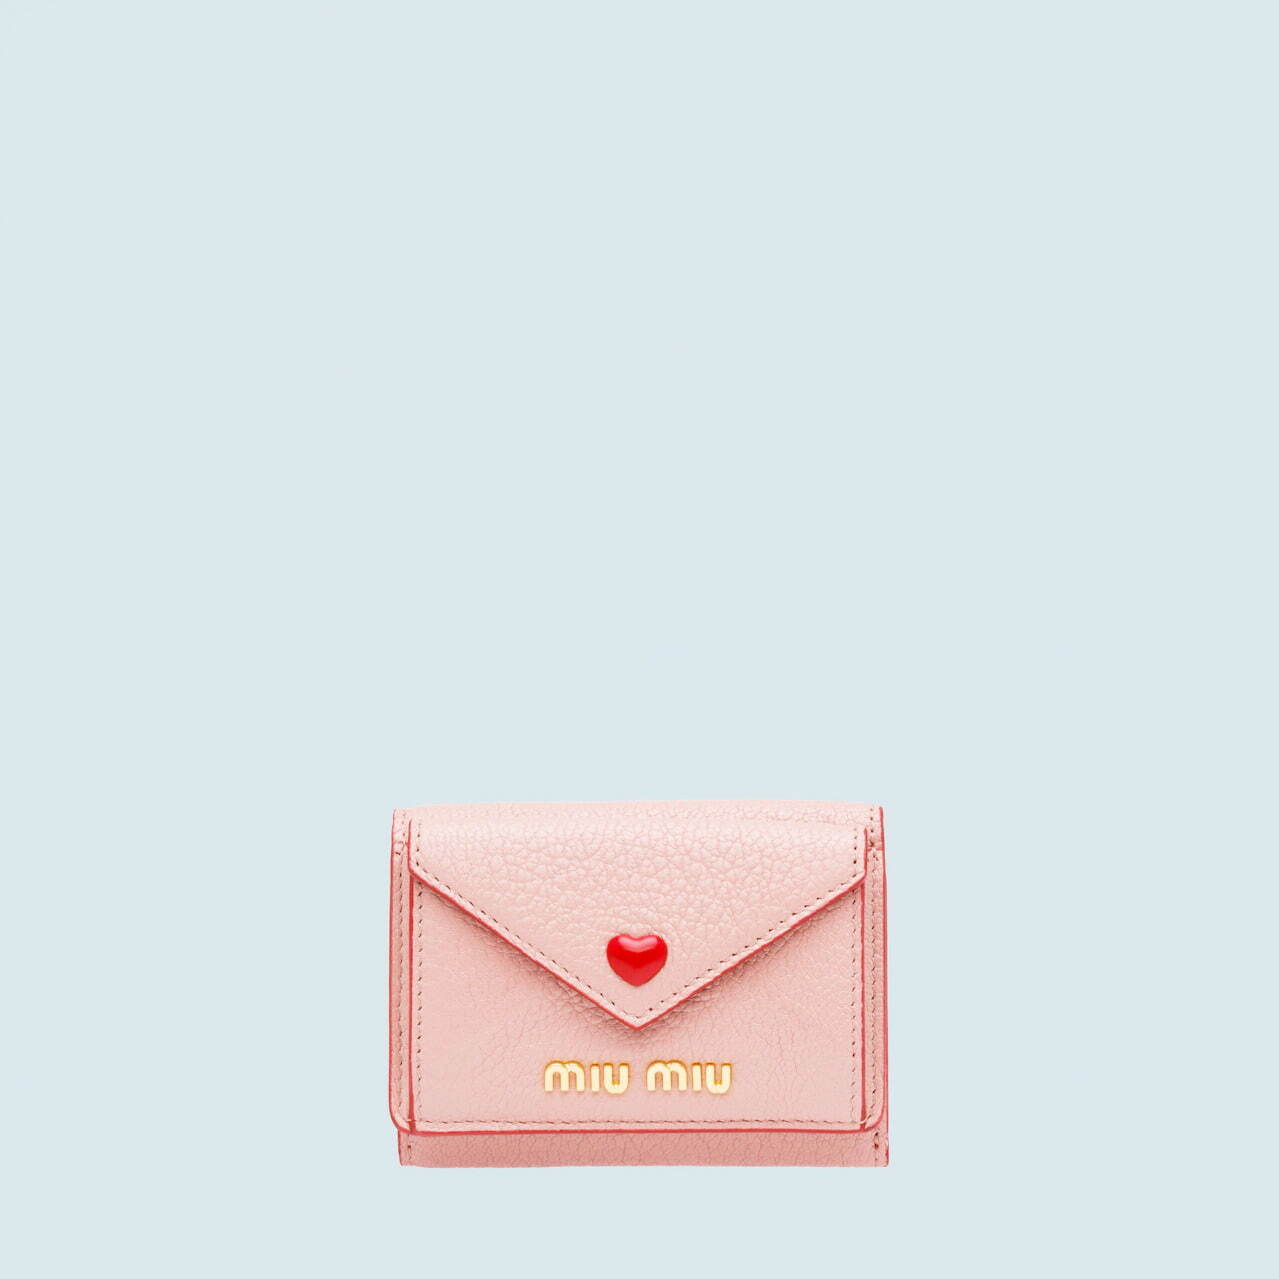 人気ブランド「ピンクレザーグッズ特集」“おしゃれ＆かわいい”財布